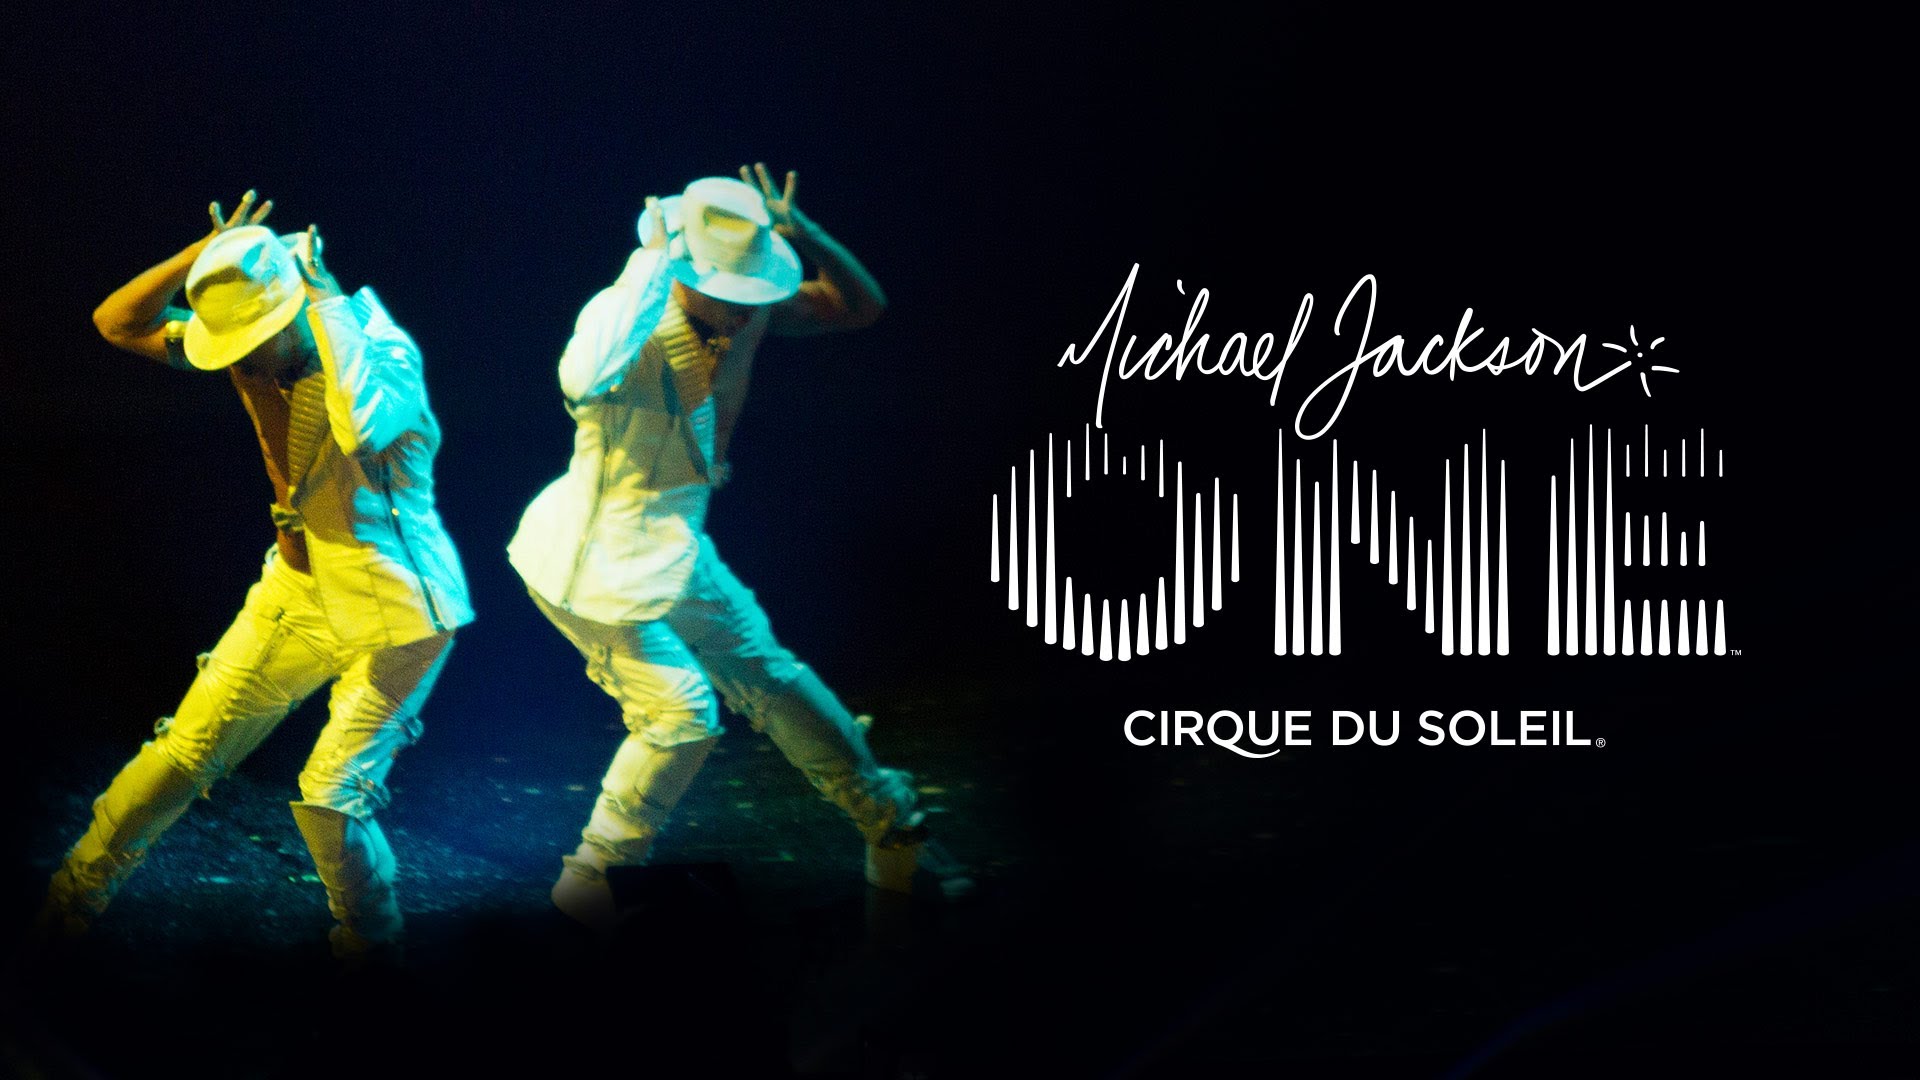 Michael jackson ones. Cirque du Soleil Michael Jackson one. Michael Jackson - the one (2004).